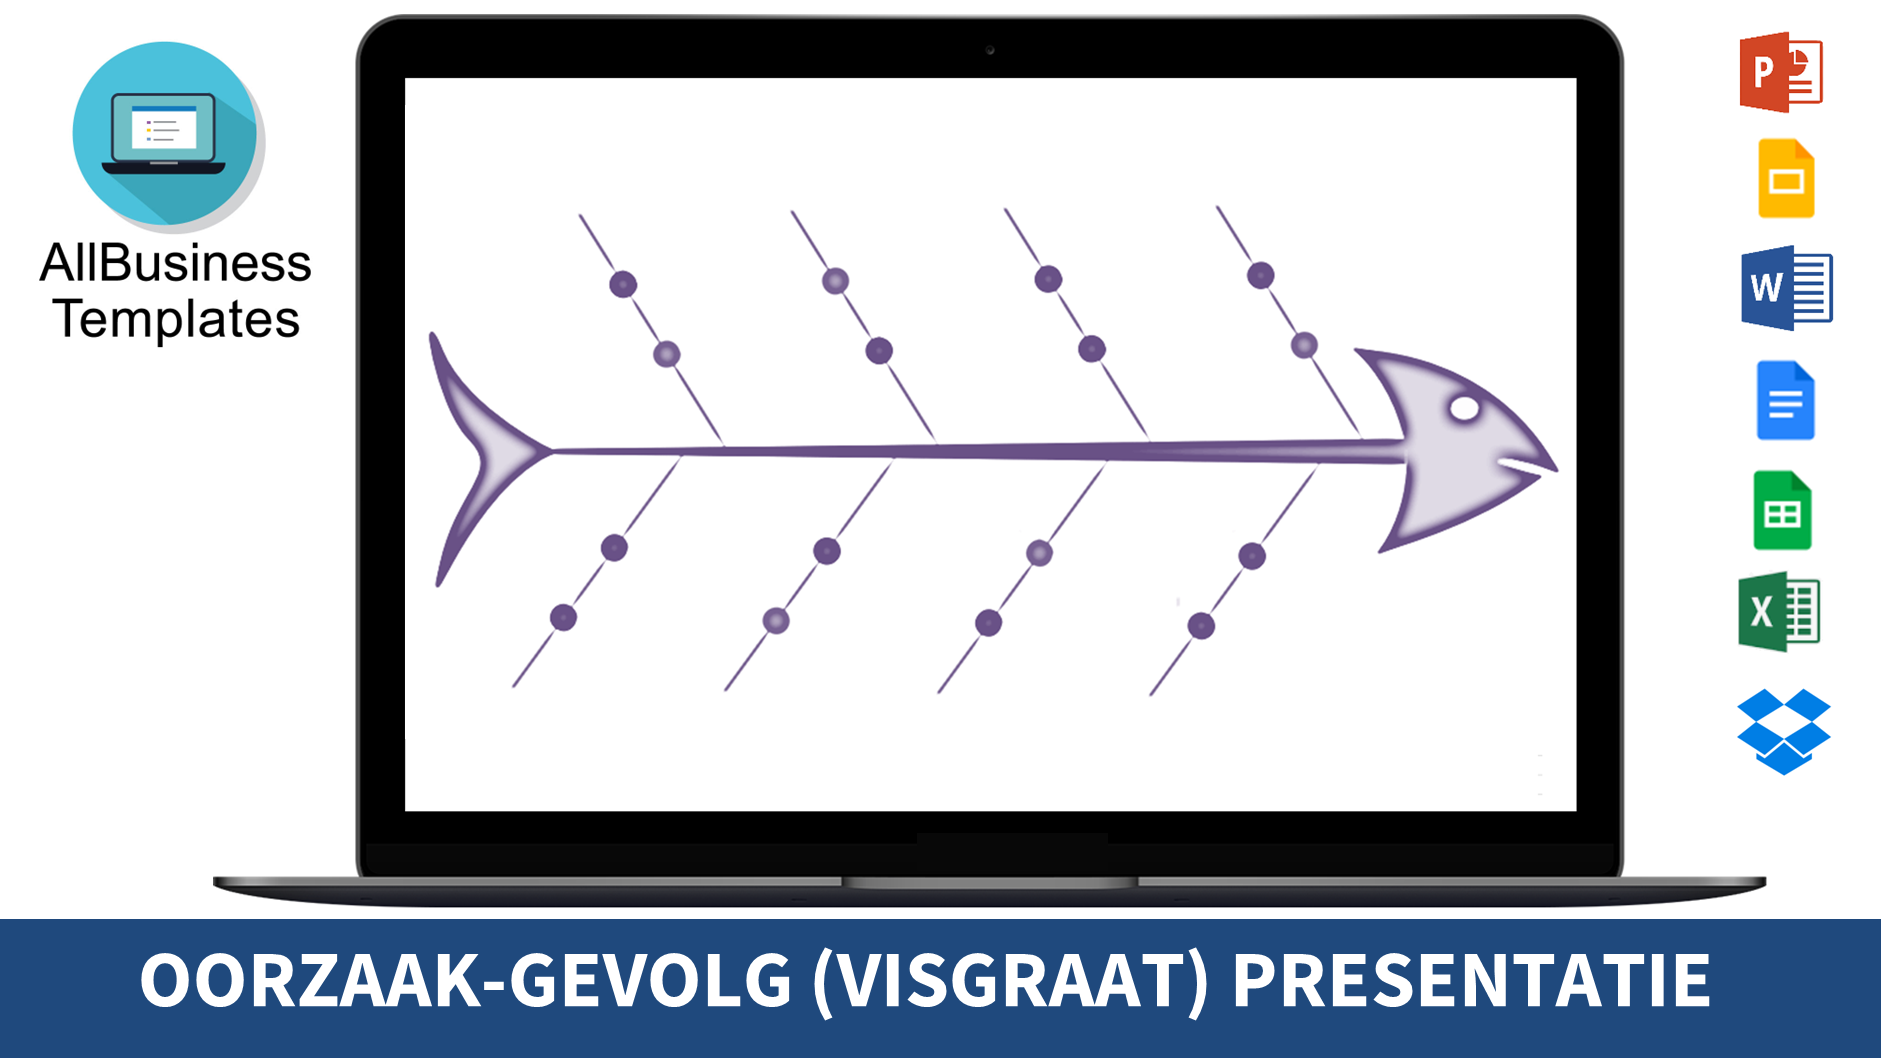 visgraatdiagram template plantilla imagen principal